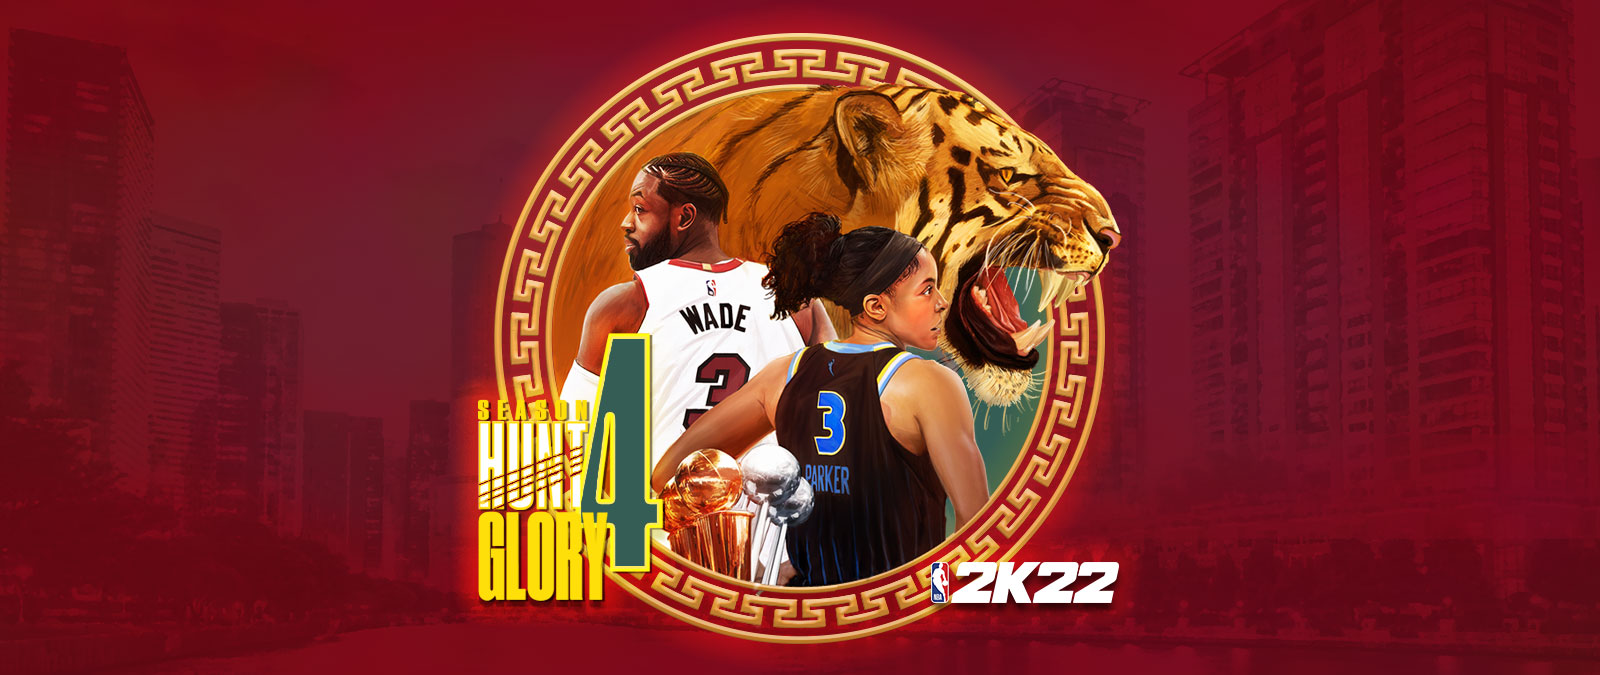 NBA 2K22, 4. évad: Hunt 4 Glory, kör alakú grafikai elem, amely egy vörös színű városkép fölött helyezkedik el, egy vicsorgó tigrist, valamint Dwayne Wade-et és Candace Parkert ábrázolja, akik hátat fordítanak egymásnak. 